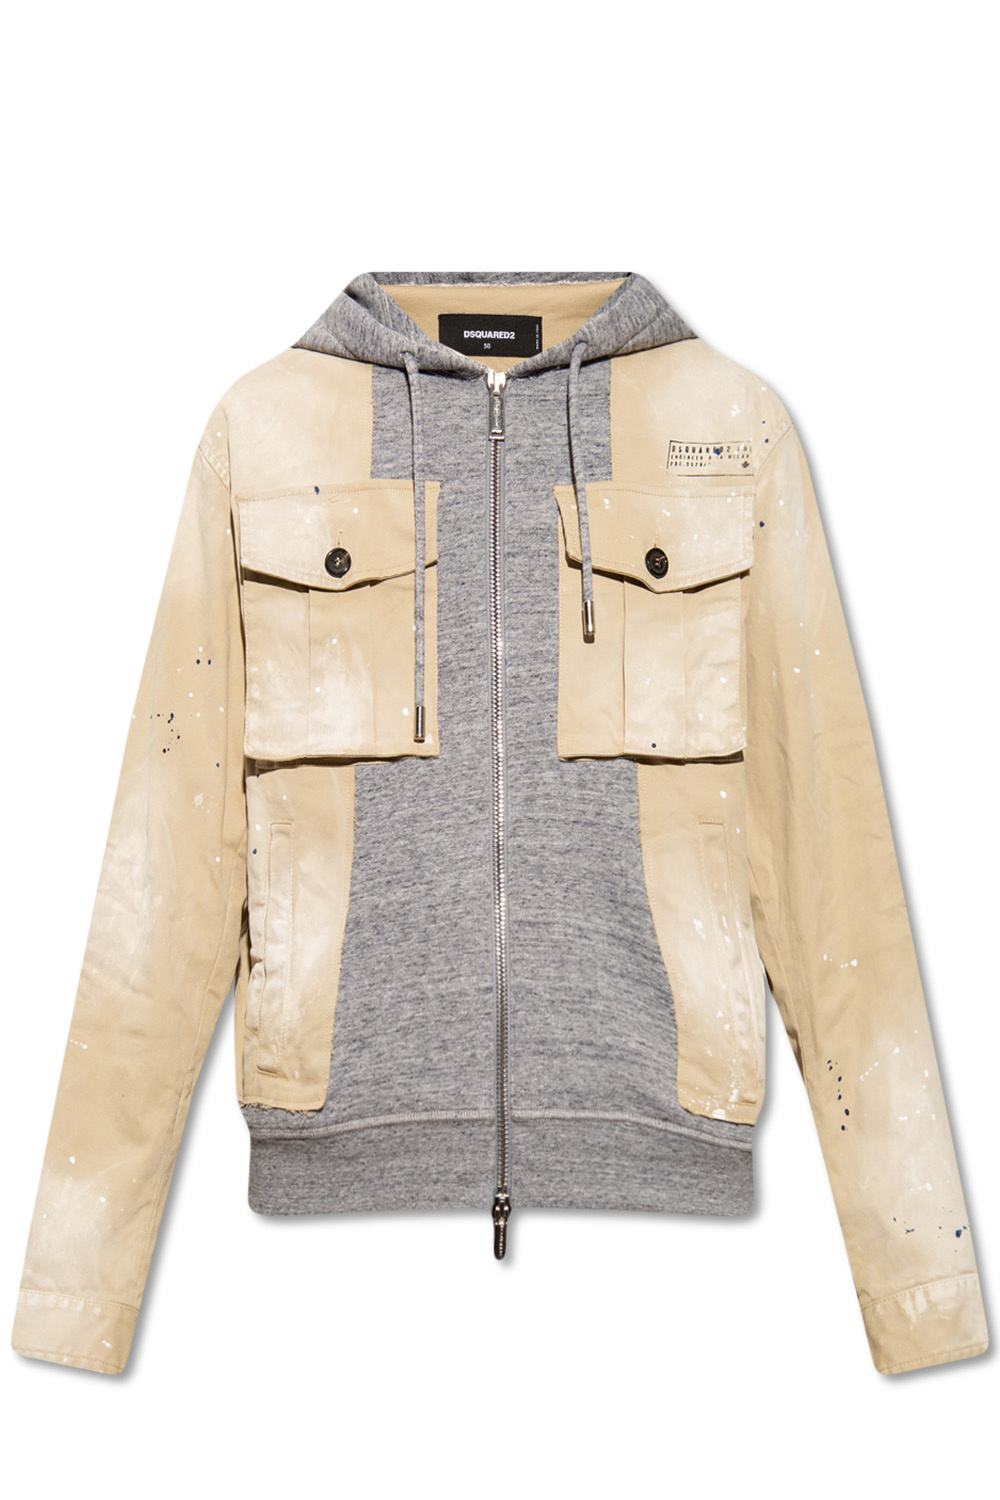 Dsquared2 ‘Stamped Hybrid’ jacket